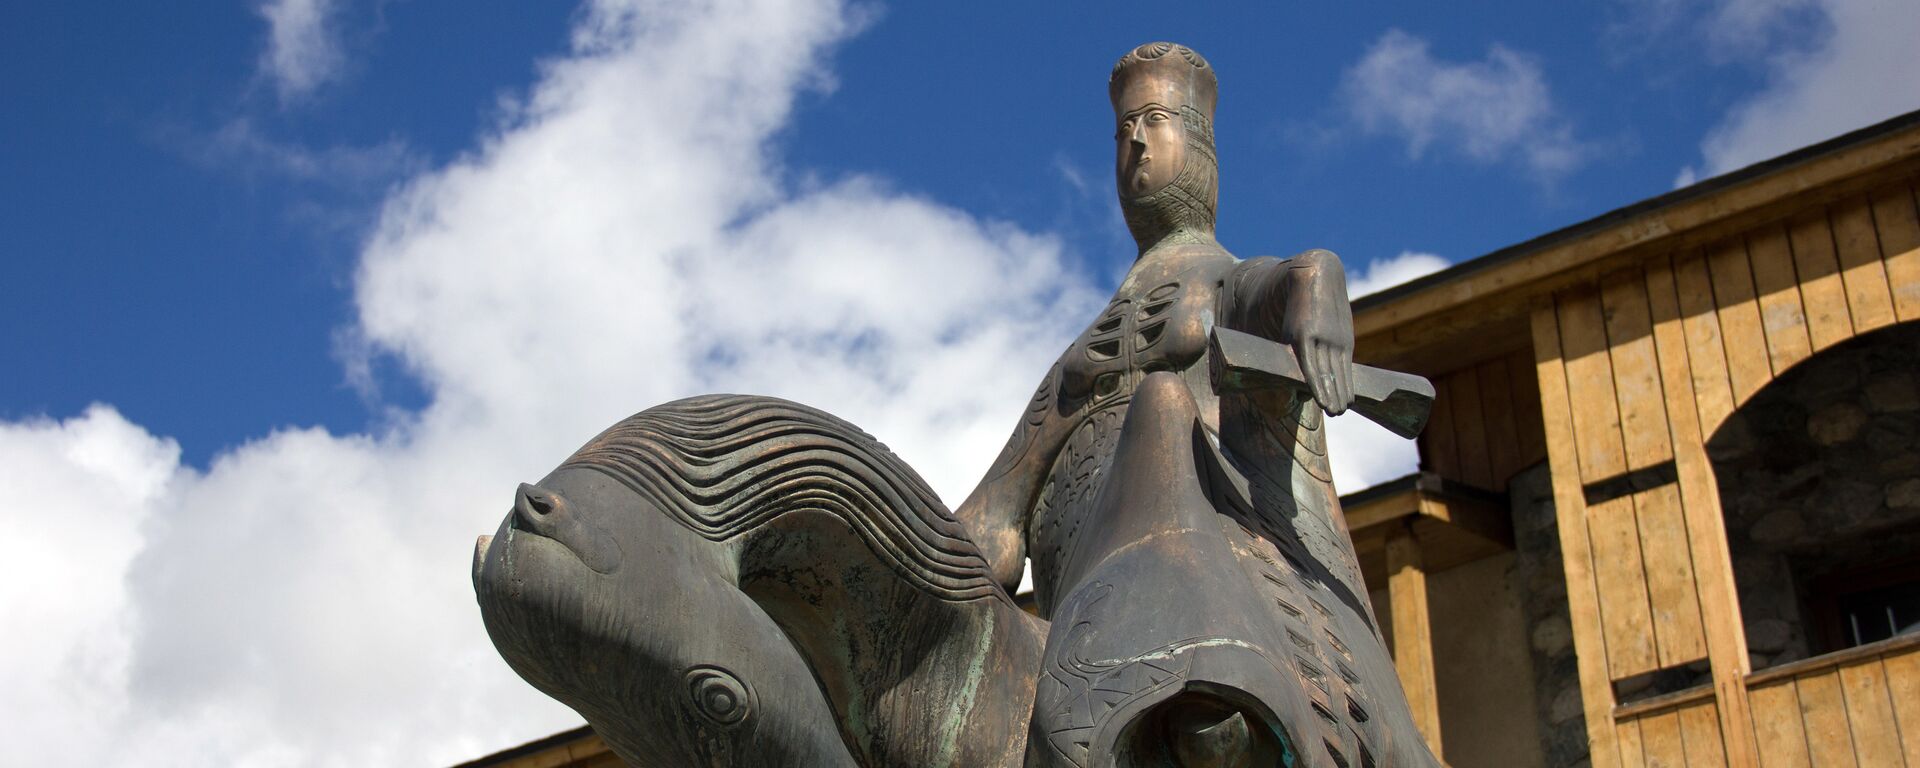 Памятник грузинской царице Тамаре (1184—1209/1213 годы) в посёлке городского типа Местиа в Грузии. - Sputnik Грузия, 1920, 06.02.2021